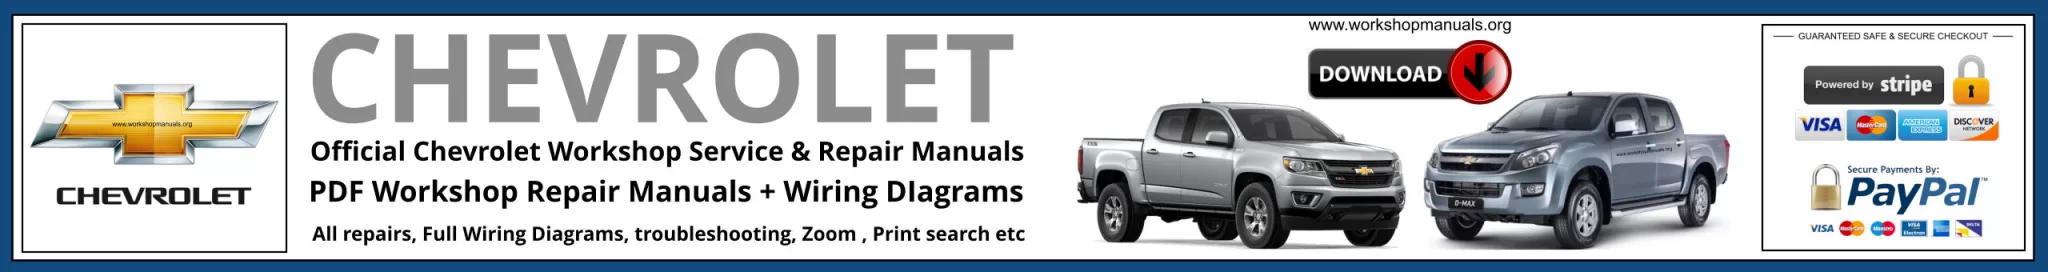 Chevrolet Workshop Repair Manual Banner